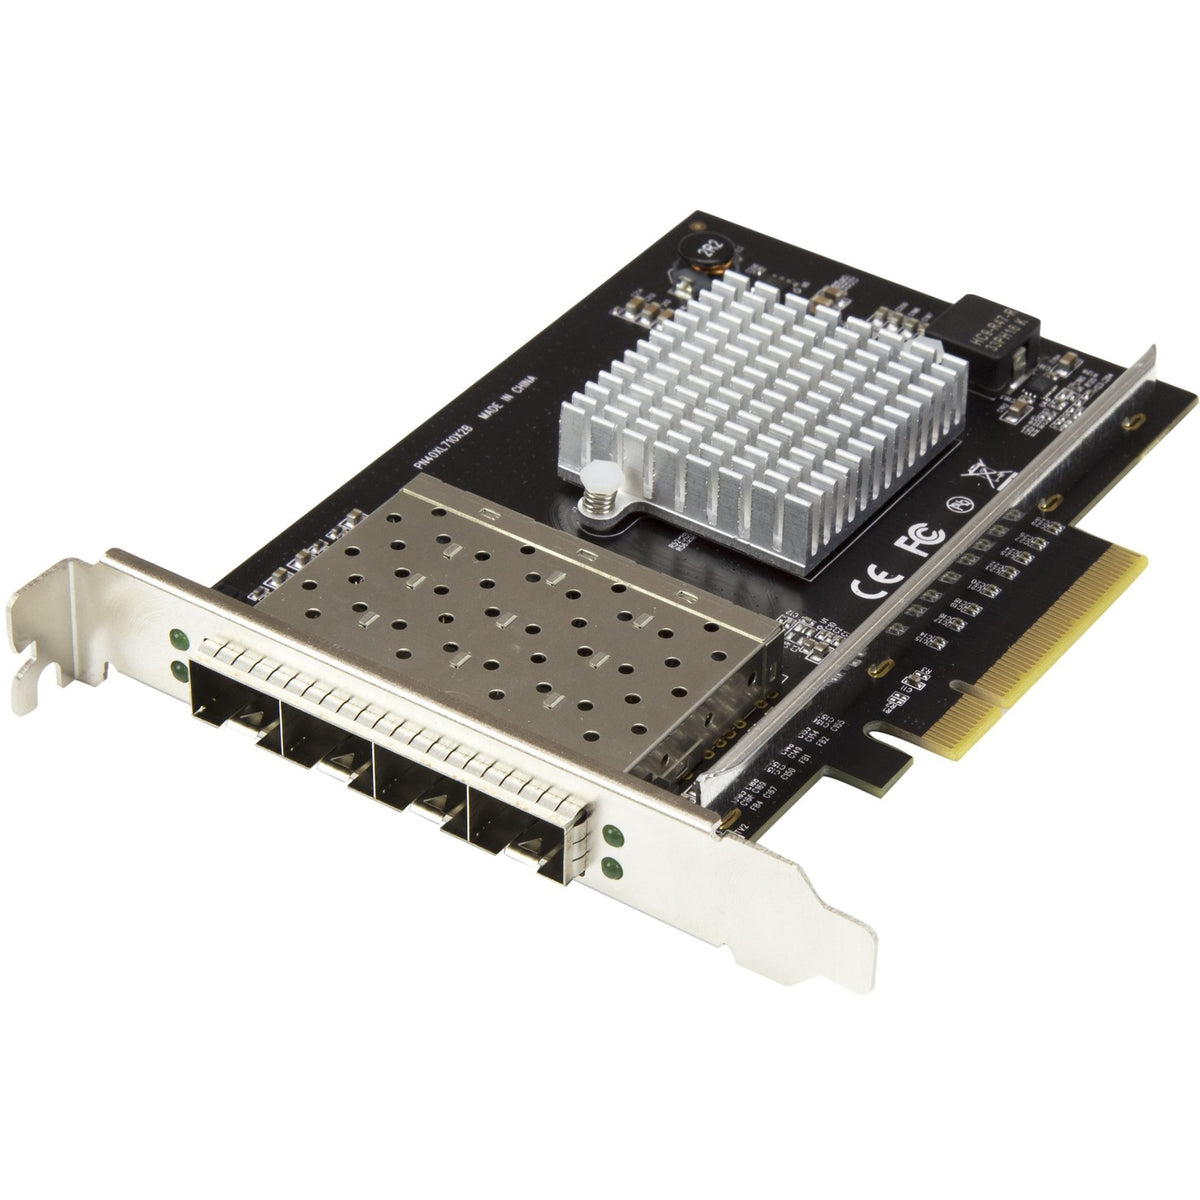 StarTech.com Quad Port 10G SFP+ Network Card - Intel XL710 Open SFP+ Converged Adapter - PCIe 10 Gigabit Fiber Optic Server NIC - 10GbE - PEX10GSFP4I